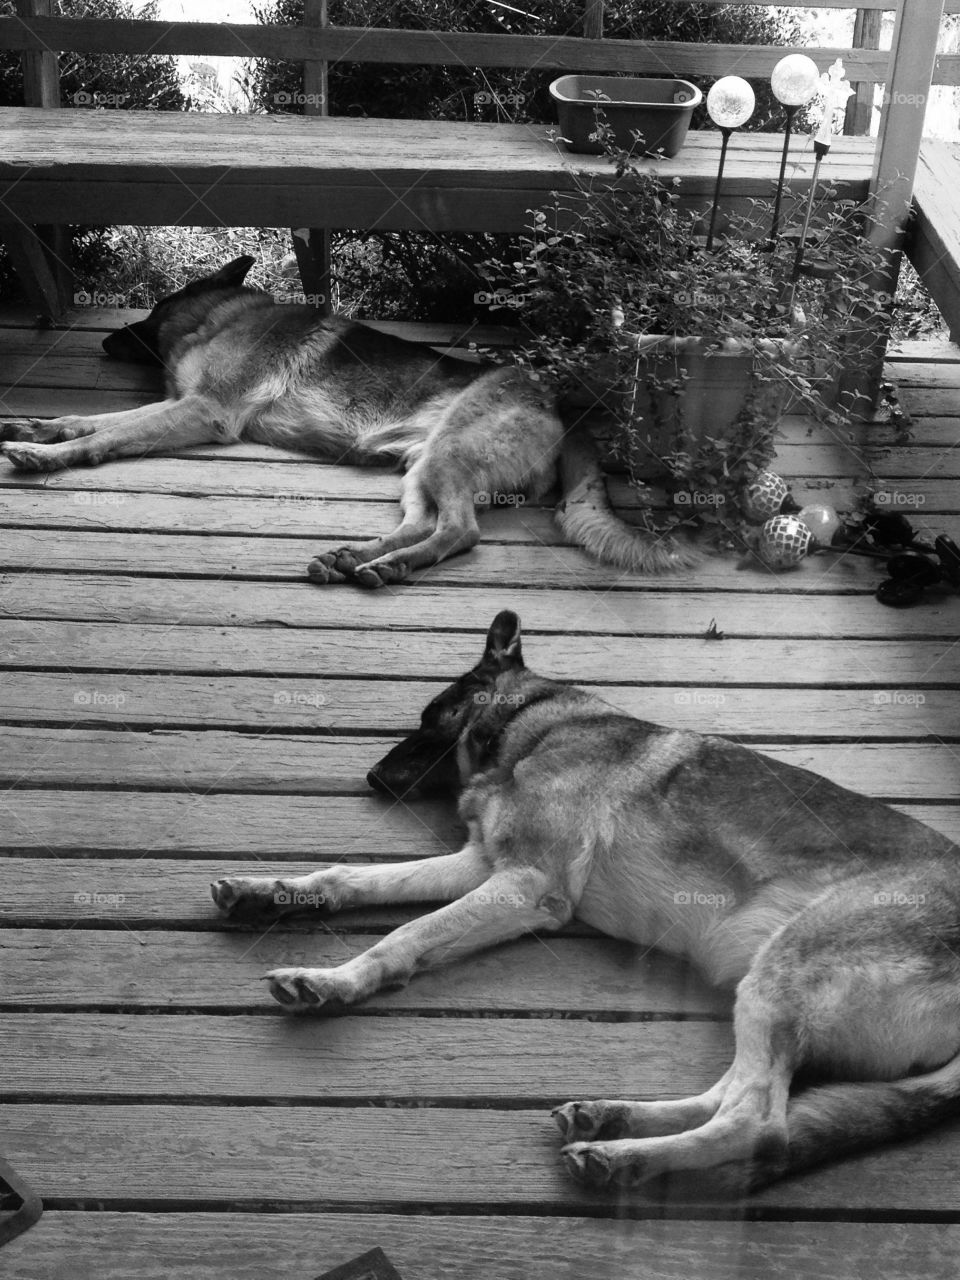 Sleeping German shepherd dogs in black and white 